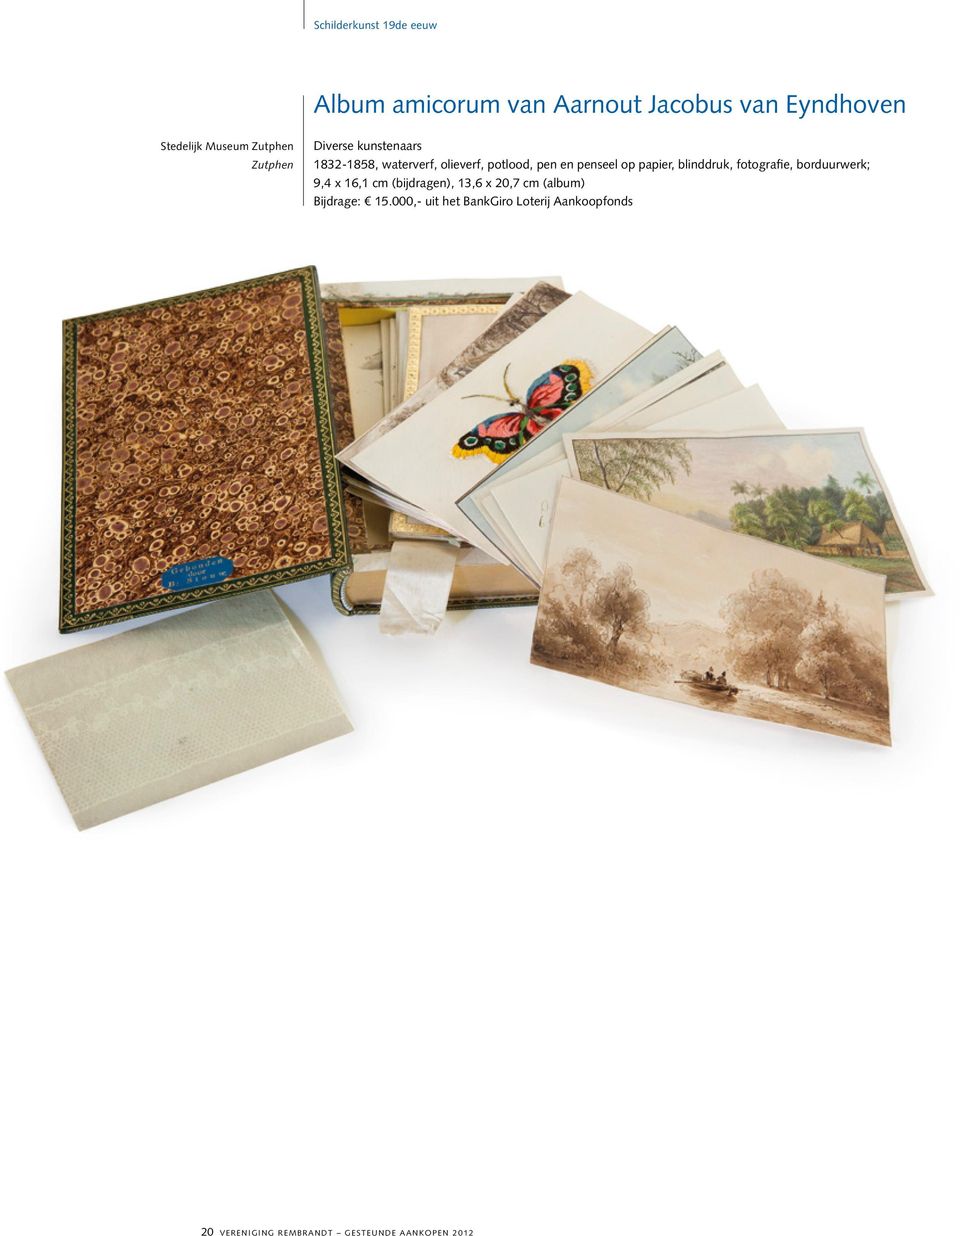 papier, blinddruk, fotografie, borduurwerk; 9,4 x 16,1 cm (bijdragen), 13,6 x 20,7 cm (album)